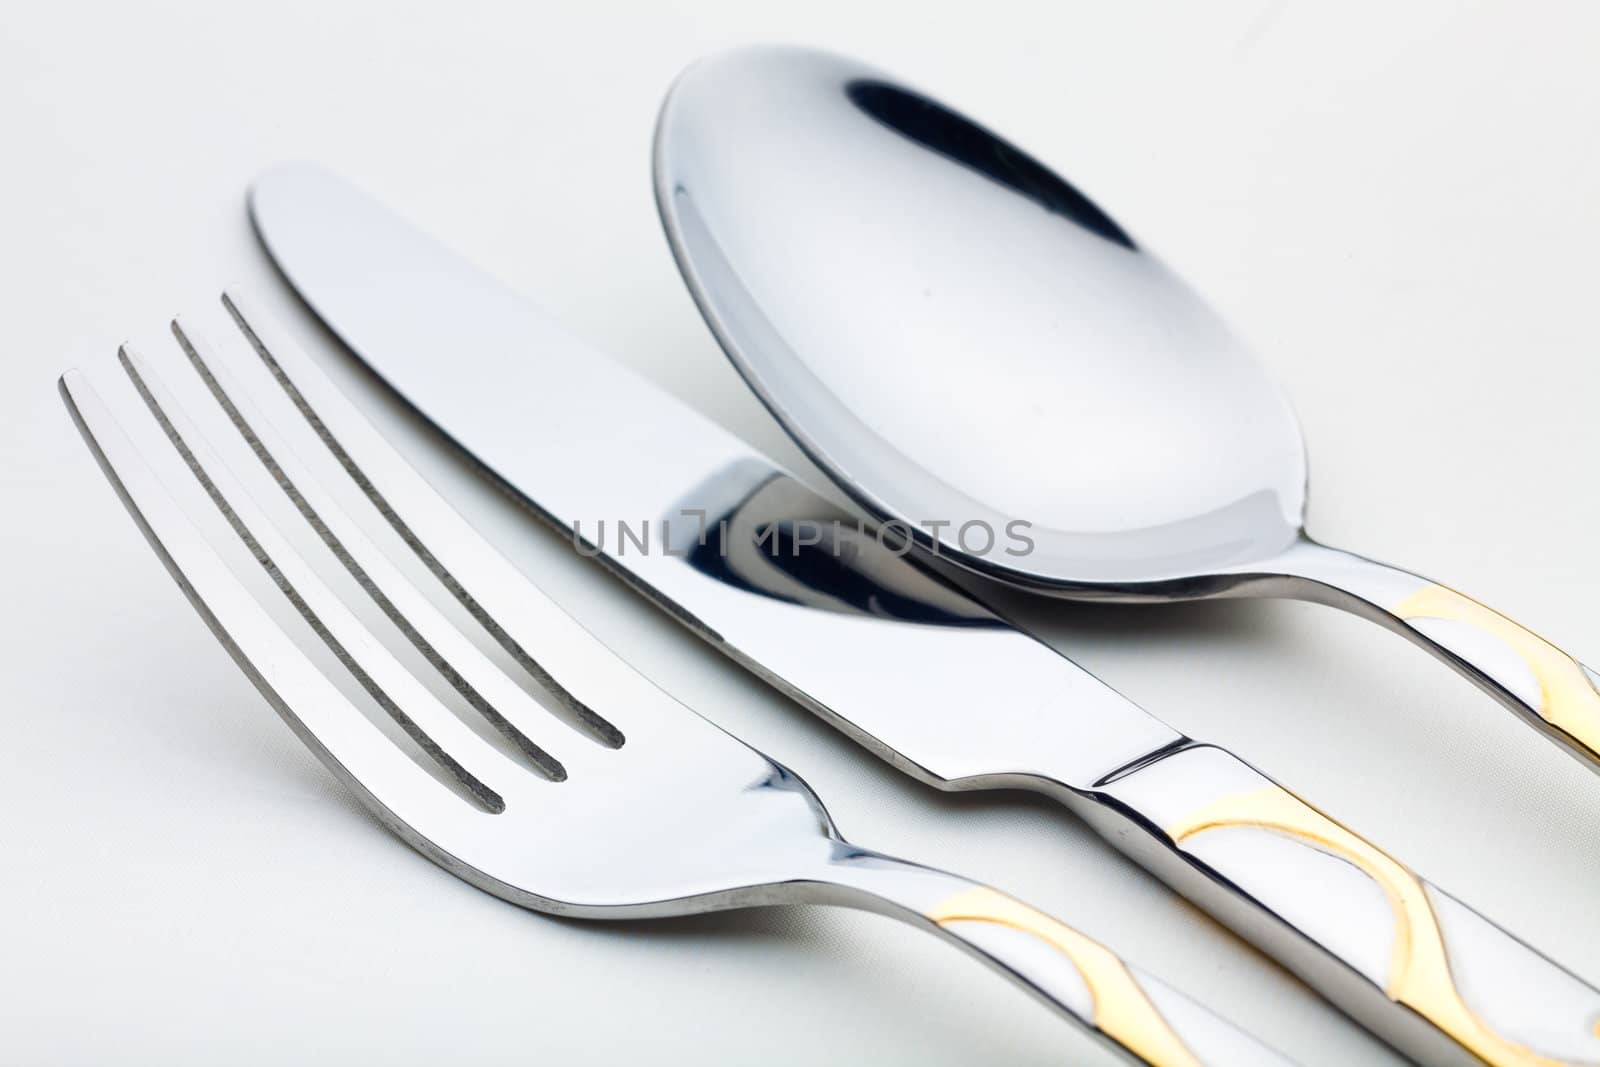 Knife, fork, spoon by Antartis